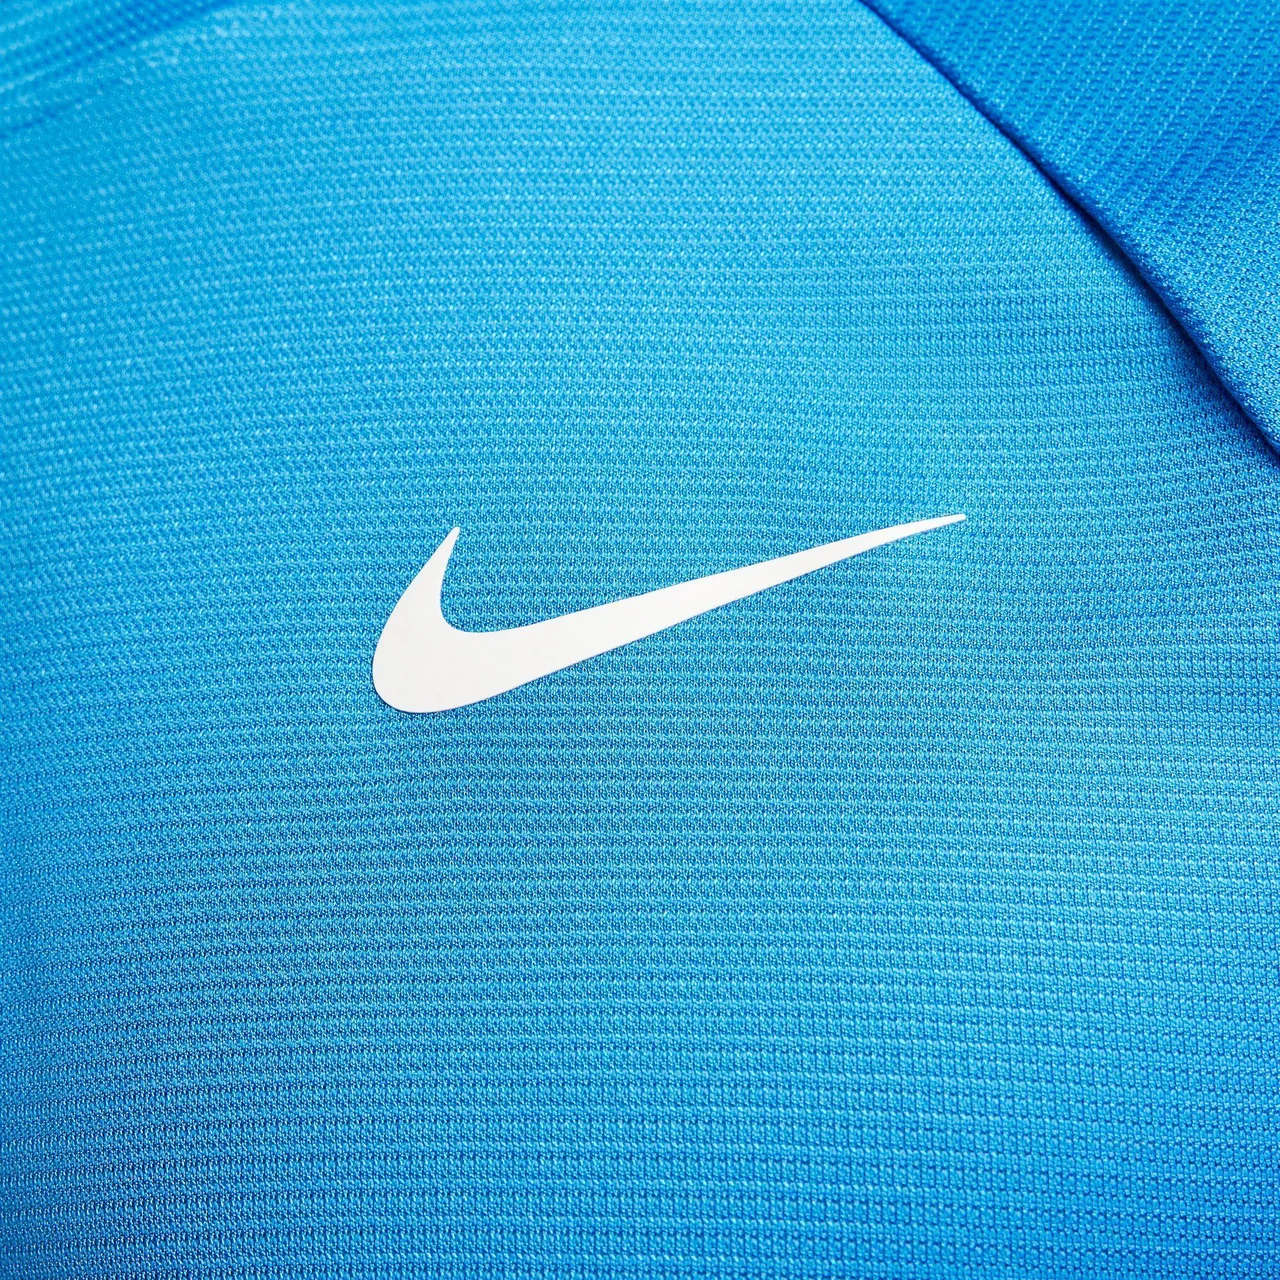 Nike Rafa Challenger T-Shirt Light Blue